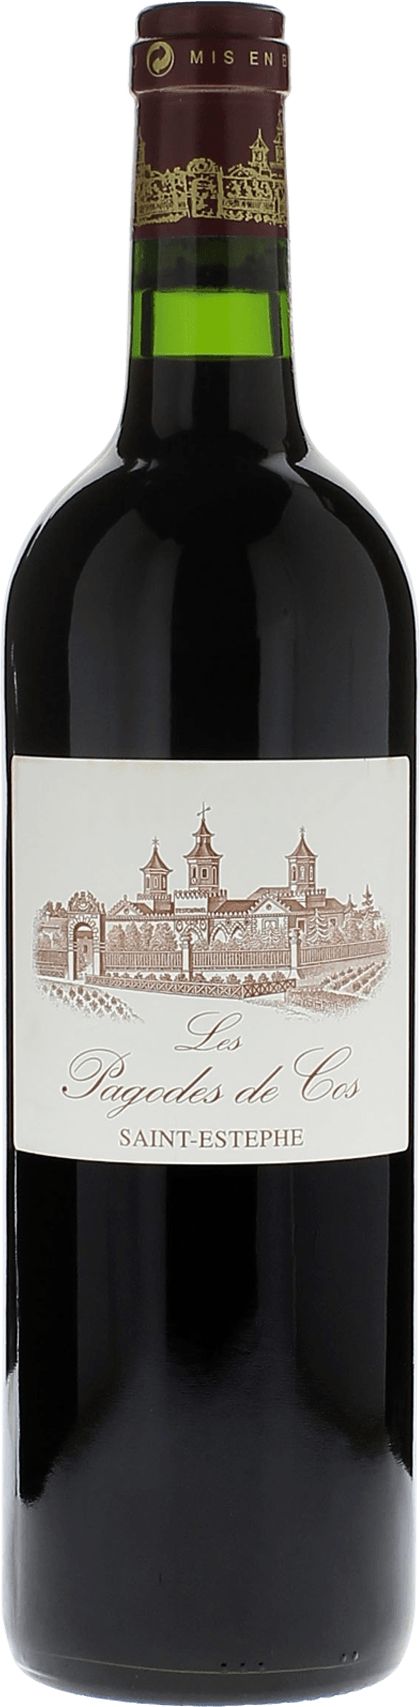 Pagodes de cos 2017 2me vin de COS D'ESTOURNEL Saint-Estphe, Bordeaux rouge